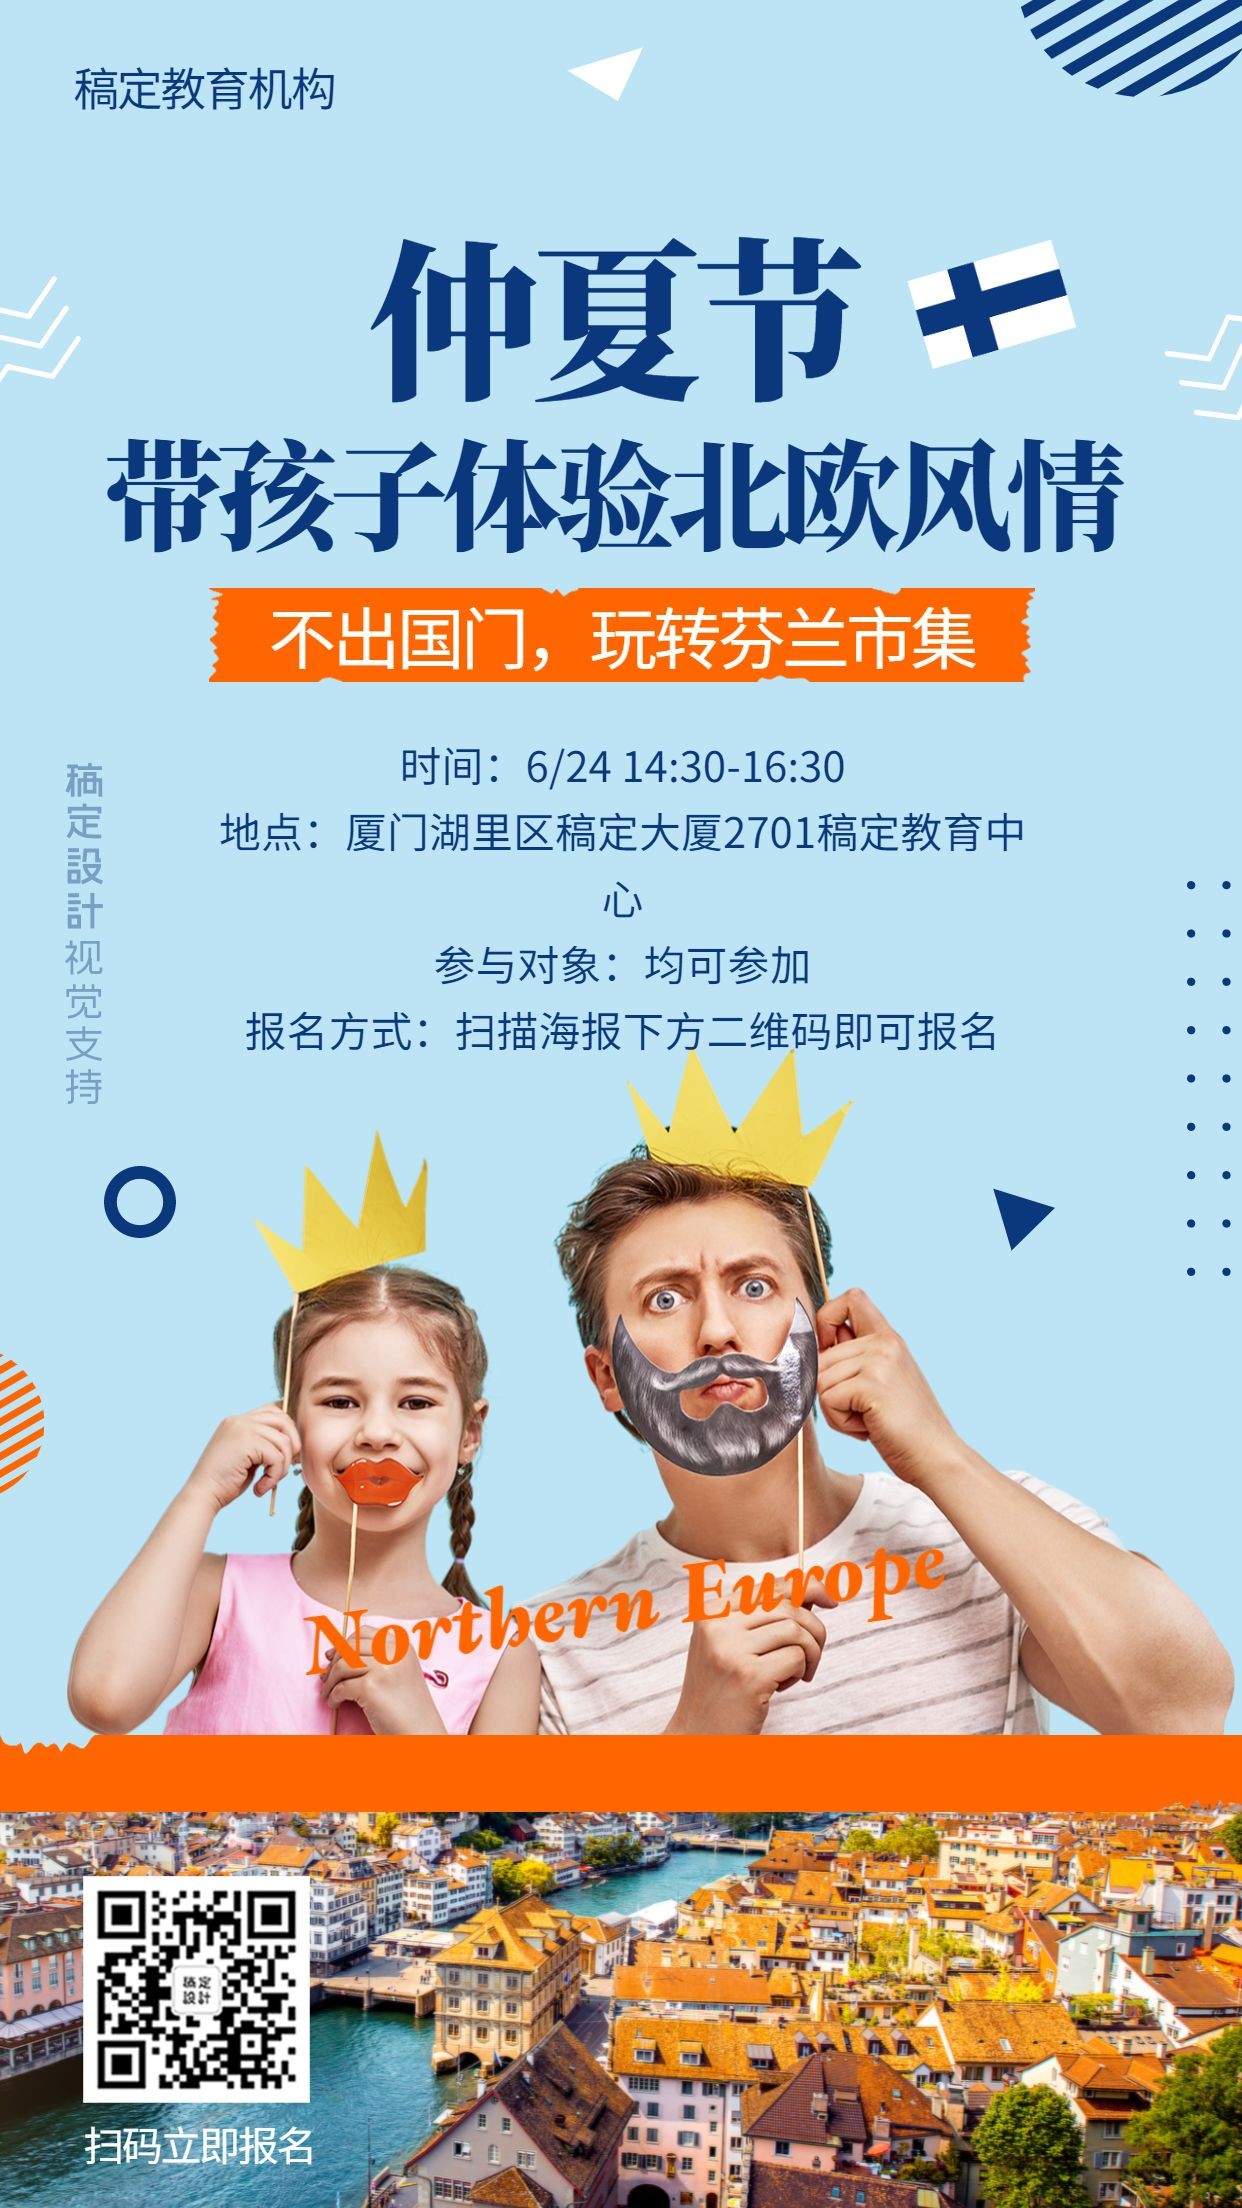 仲夏节英语教育机构活动宣传海报